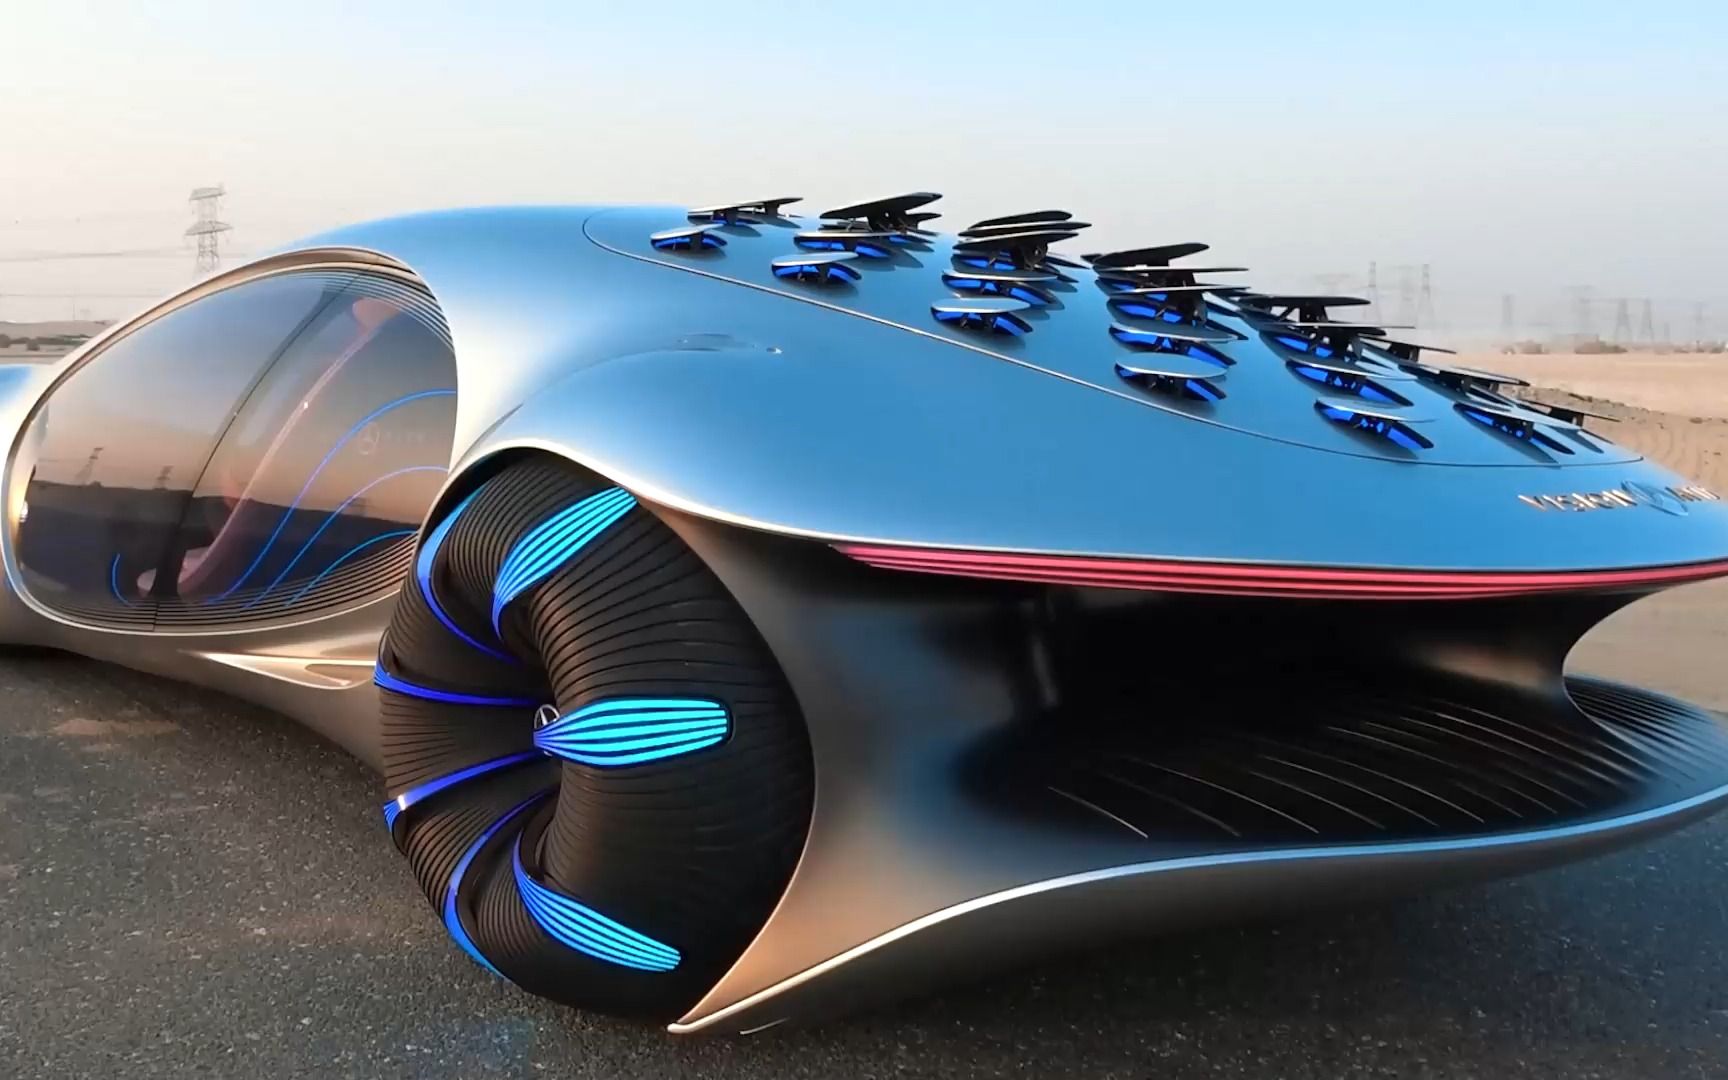 世界上最酷的概念车——梅赛德斯 avtr